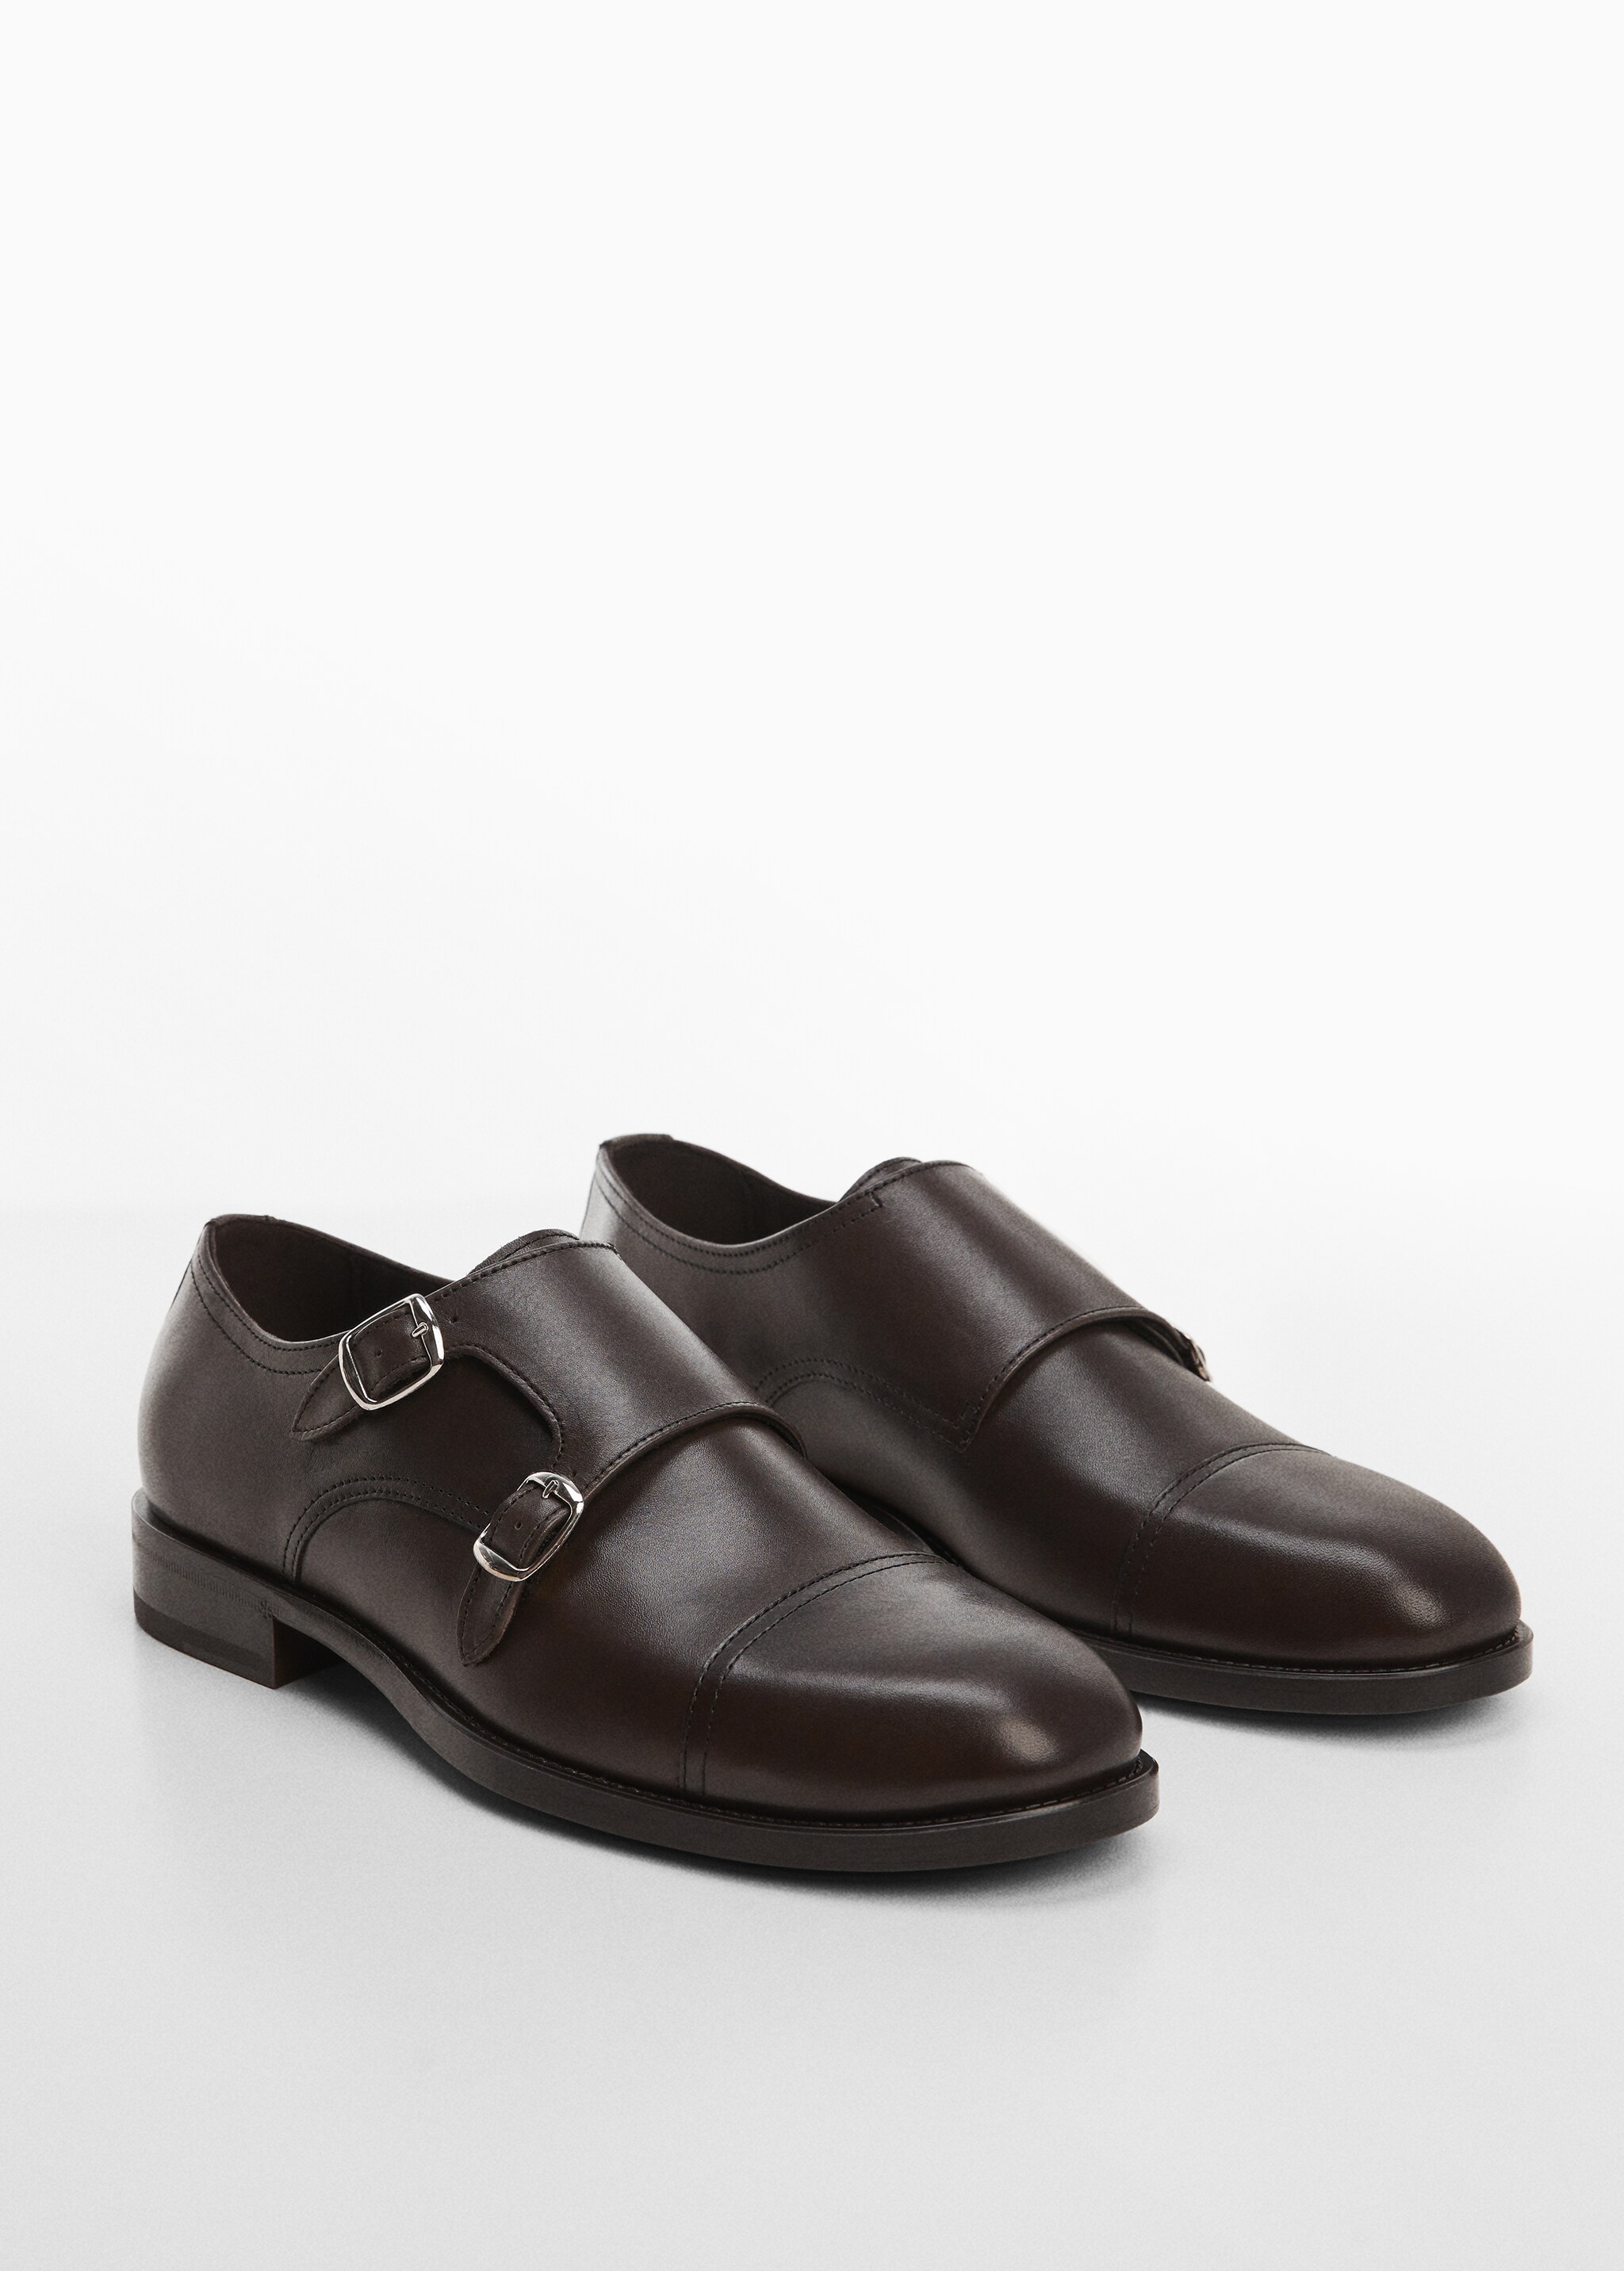 Leather suit shoes - Medium plane